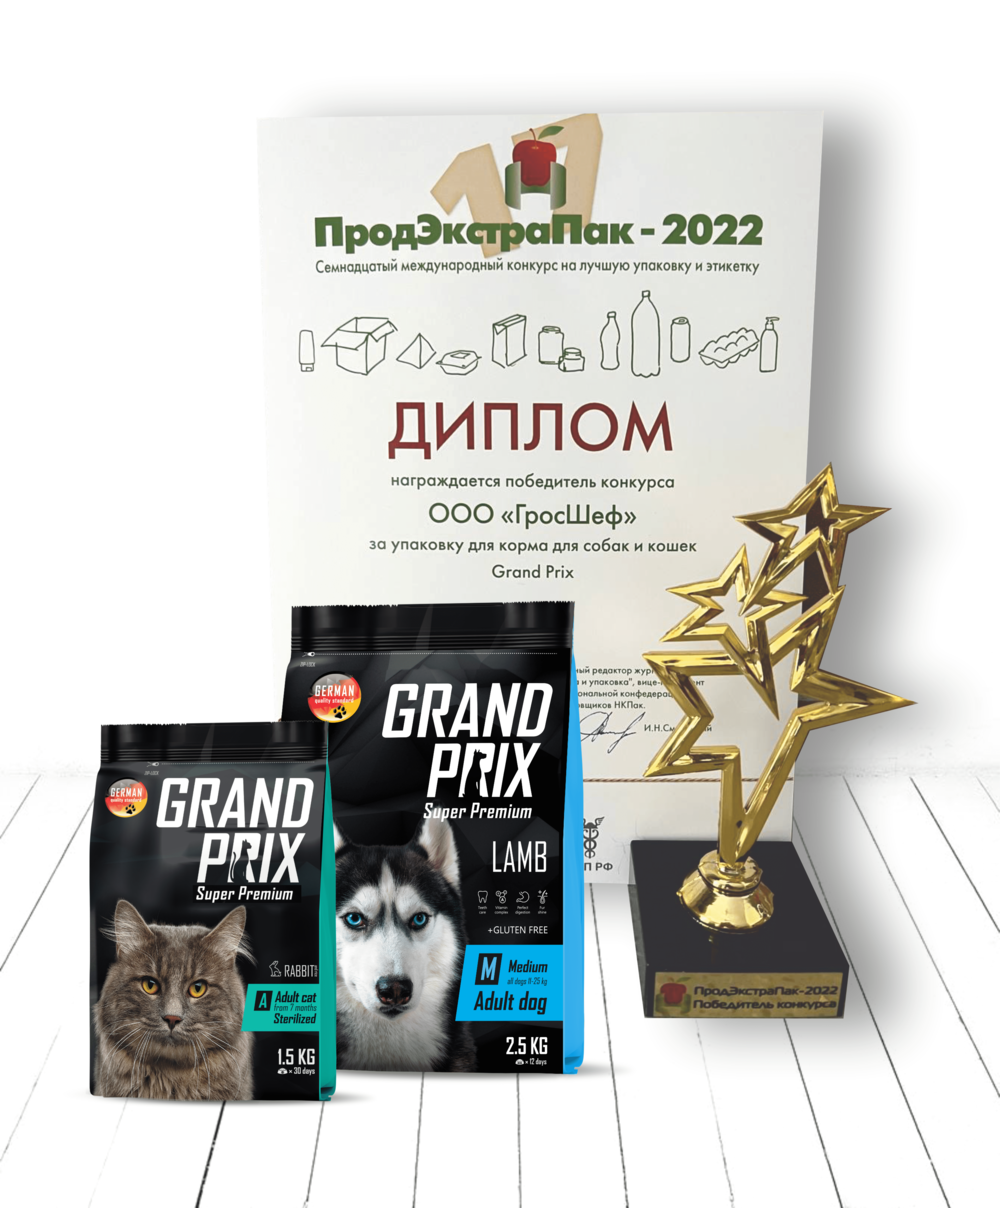 GRAND PRIX - лучшая упаковка корма для собак и кошек